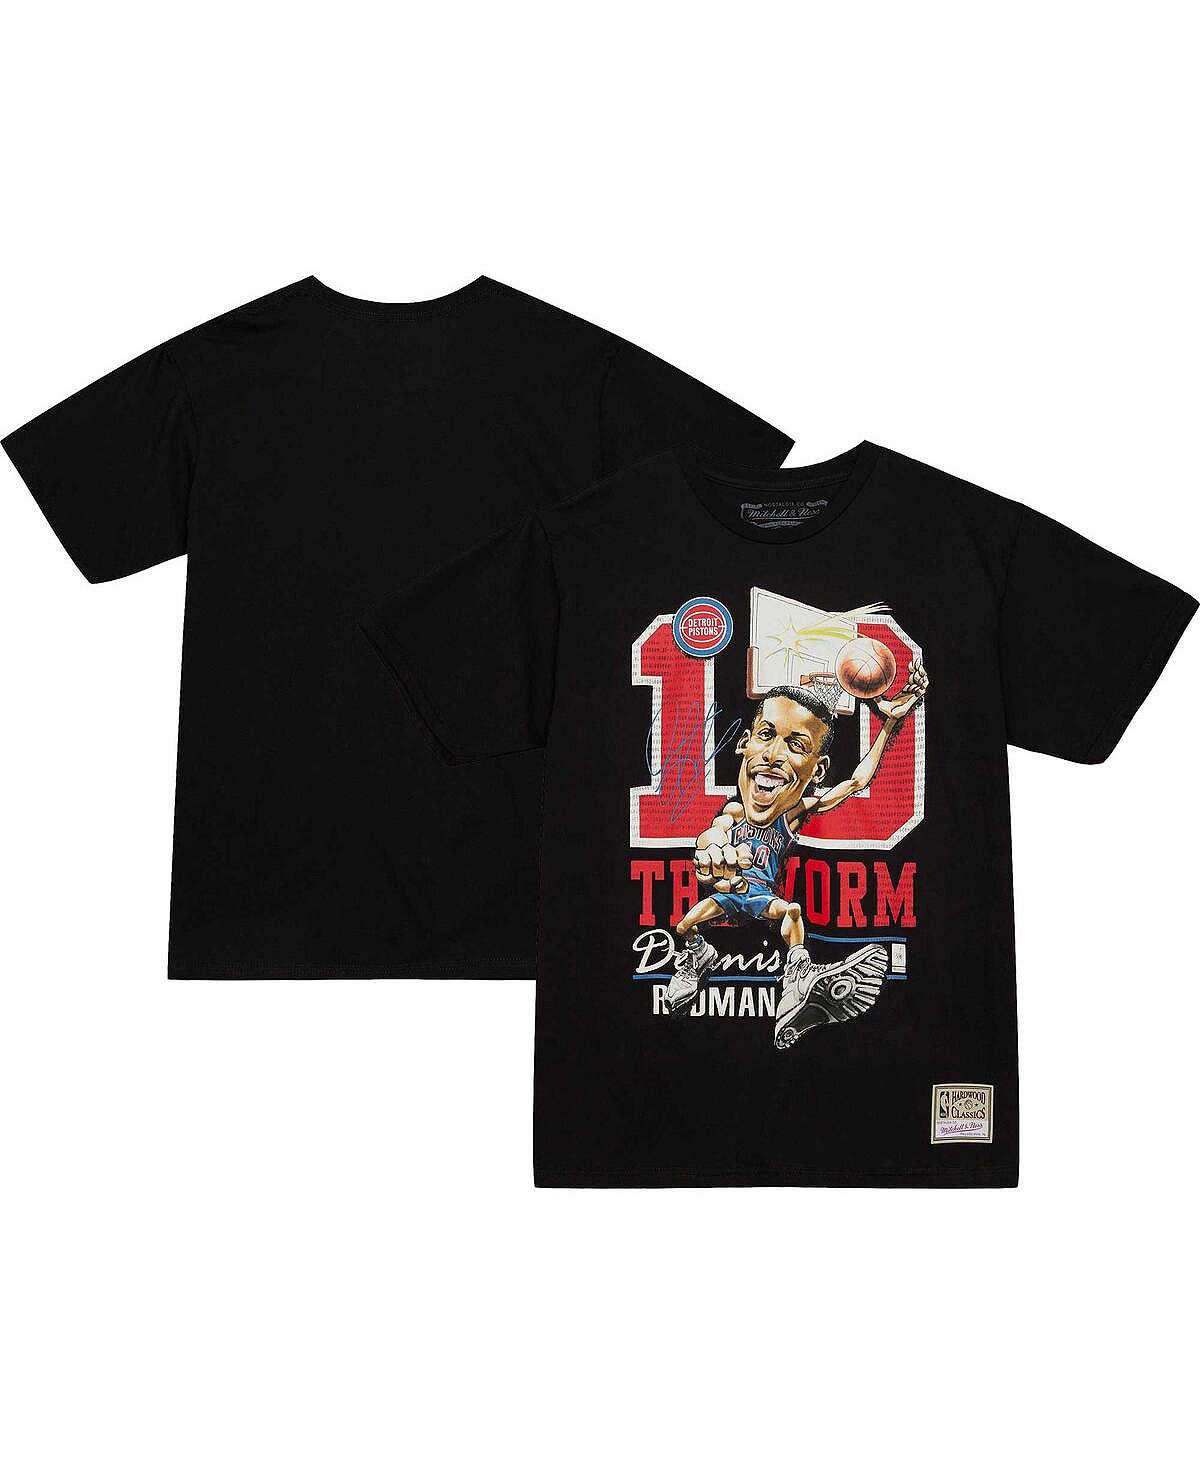 Мужская черная футболка с карикатурой Dennis Rodman Detroit Pistons Hardwood Classics Mitchell & Ness